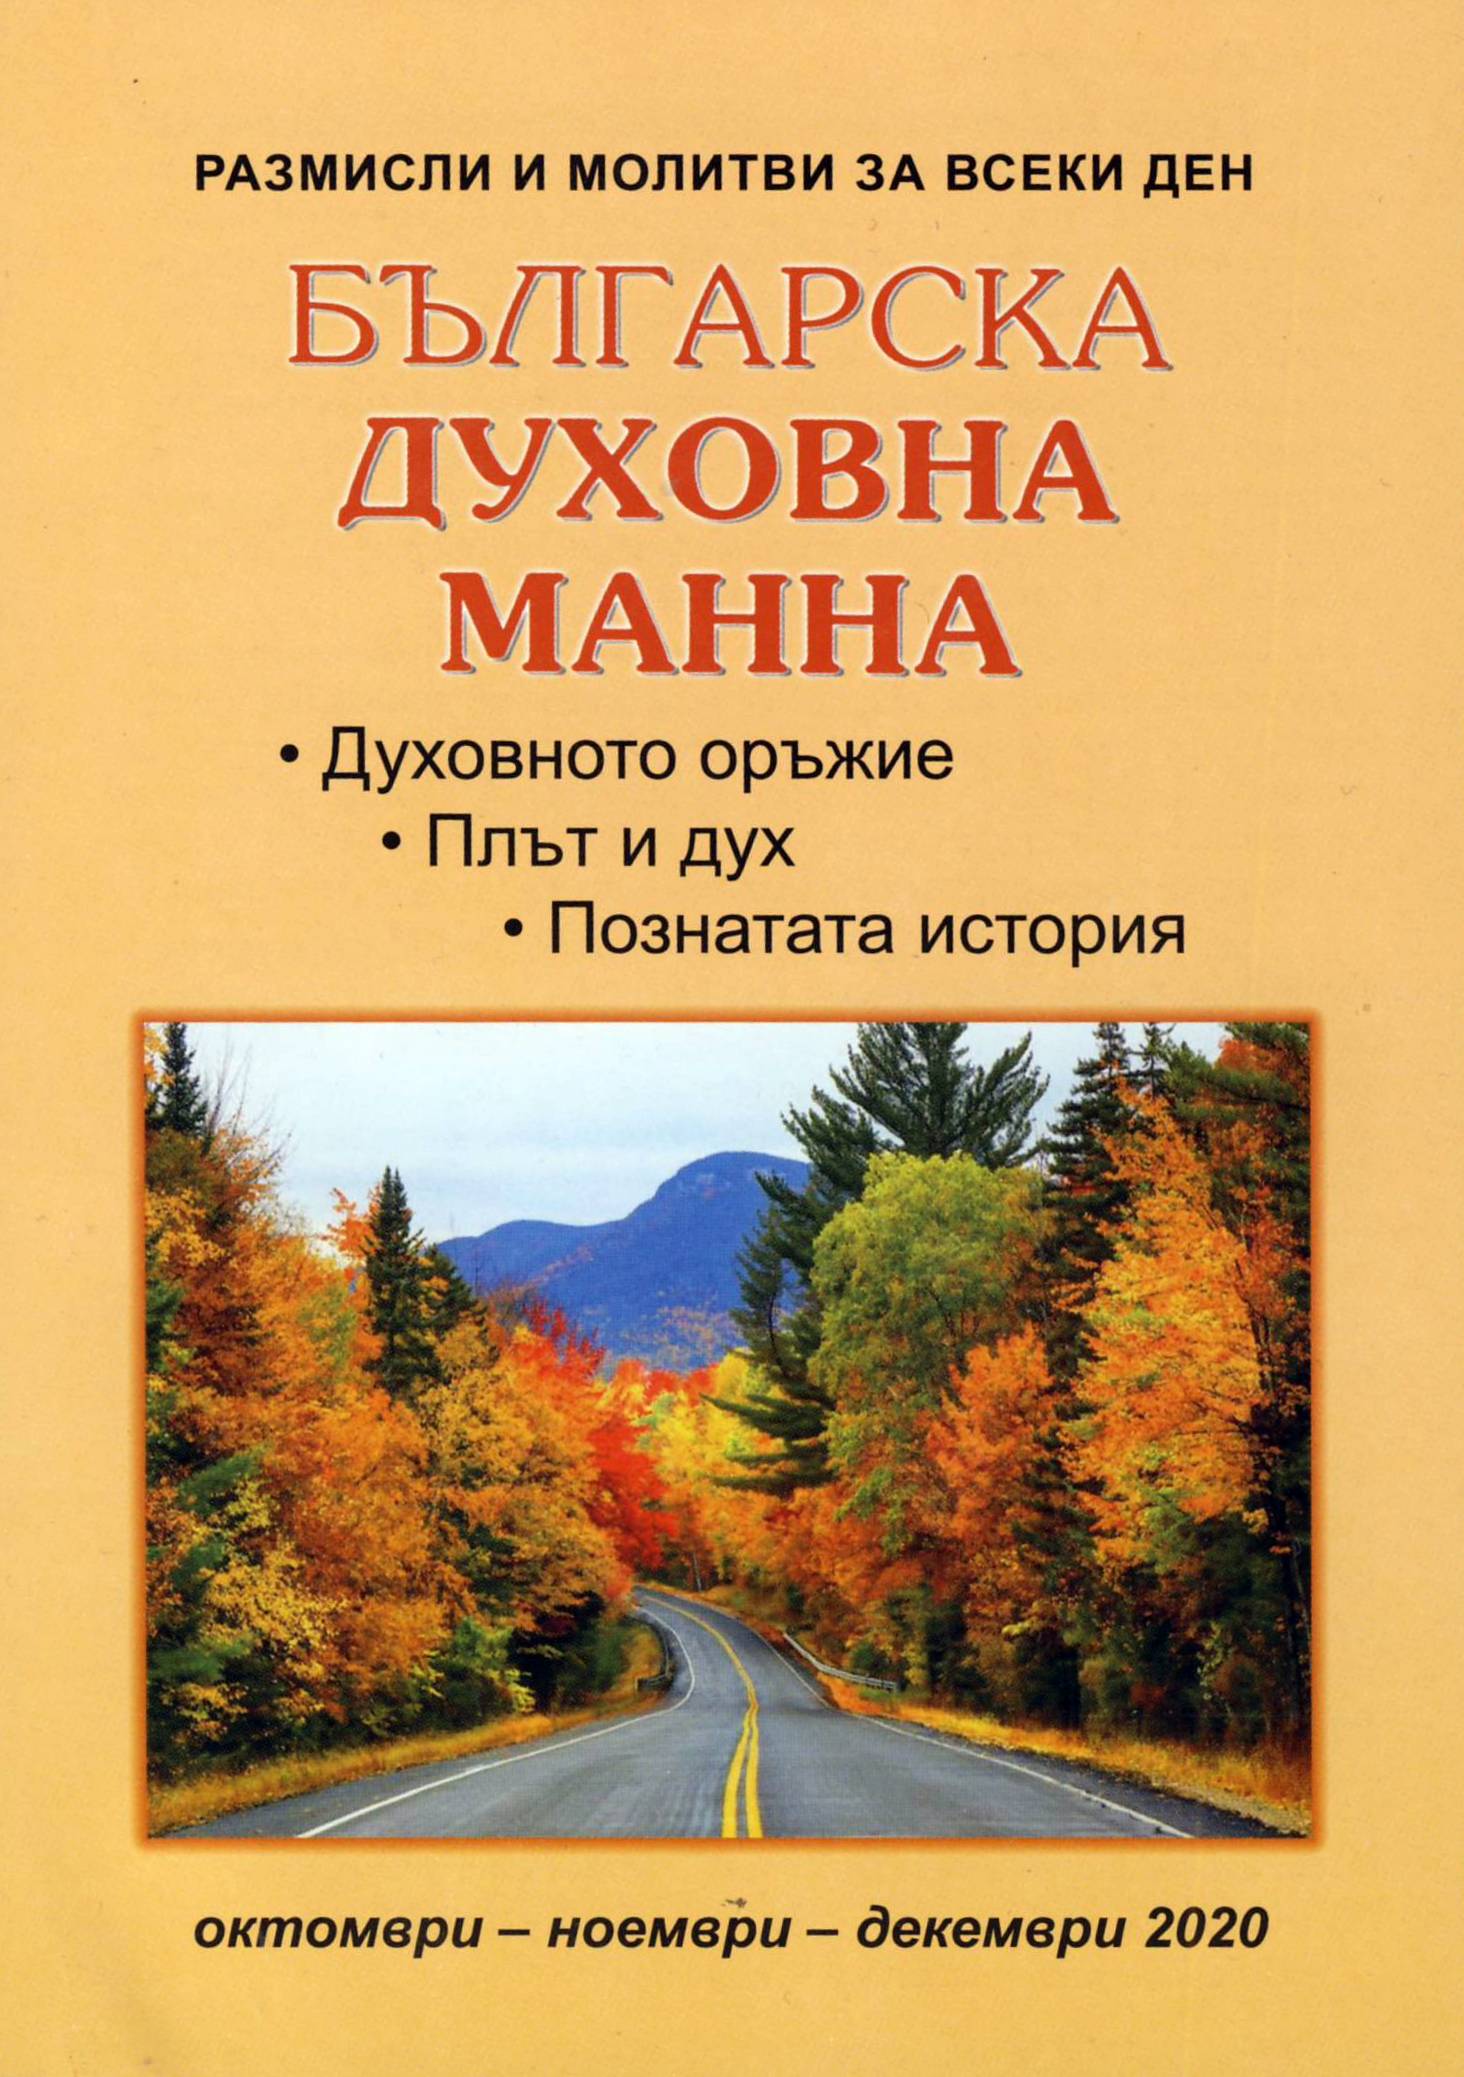 Българска духовна манна - октомври, ноември, декември 2020